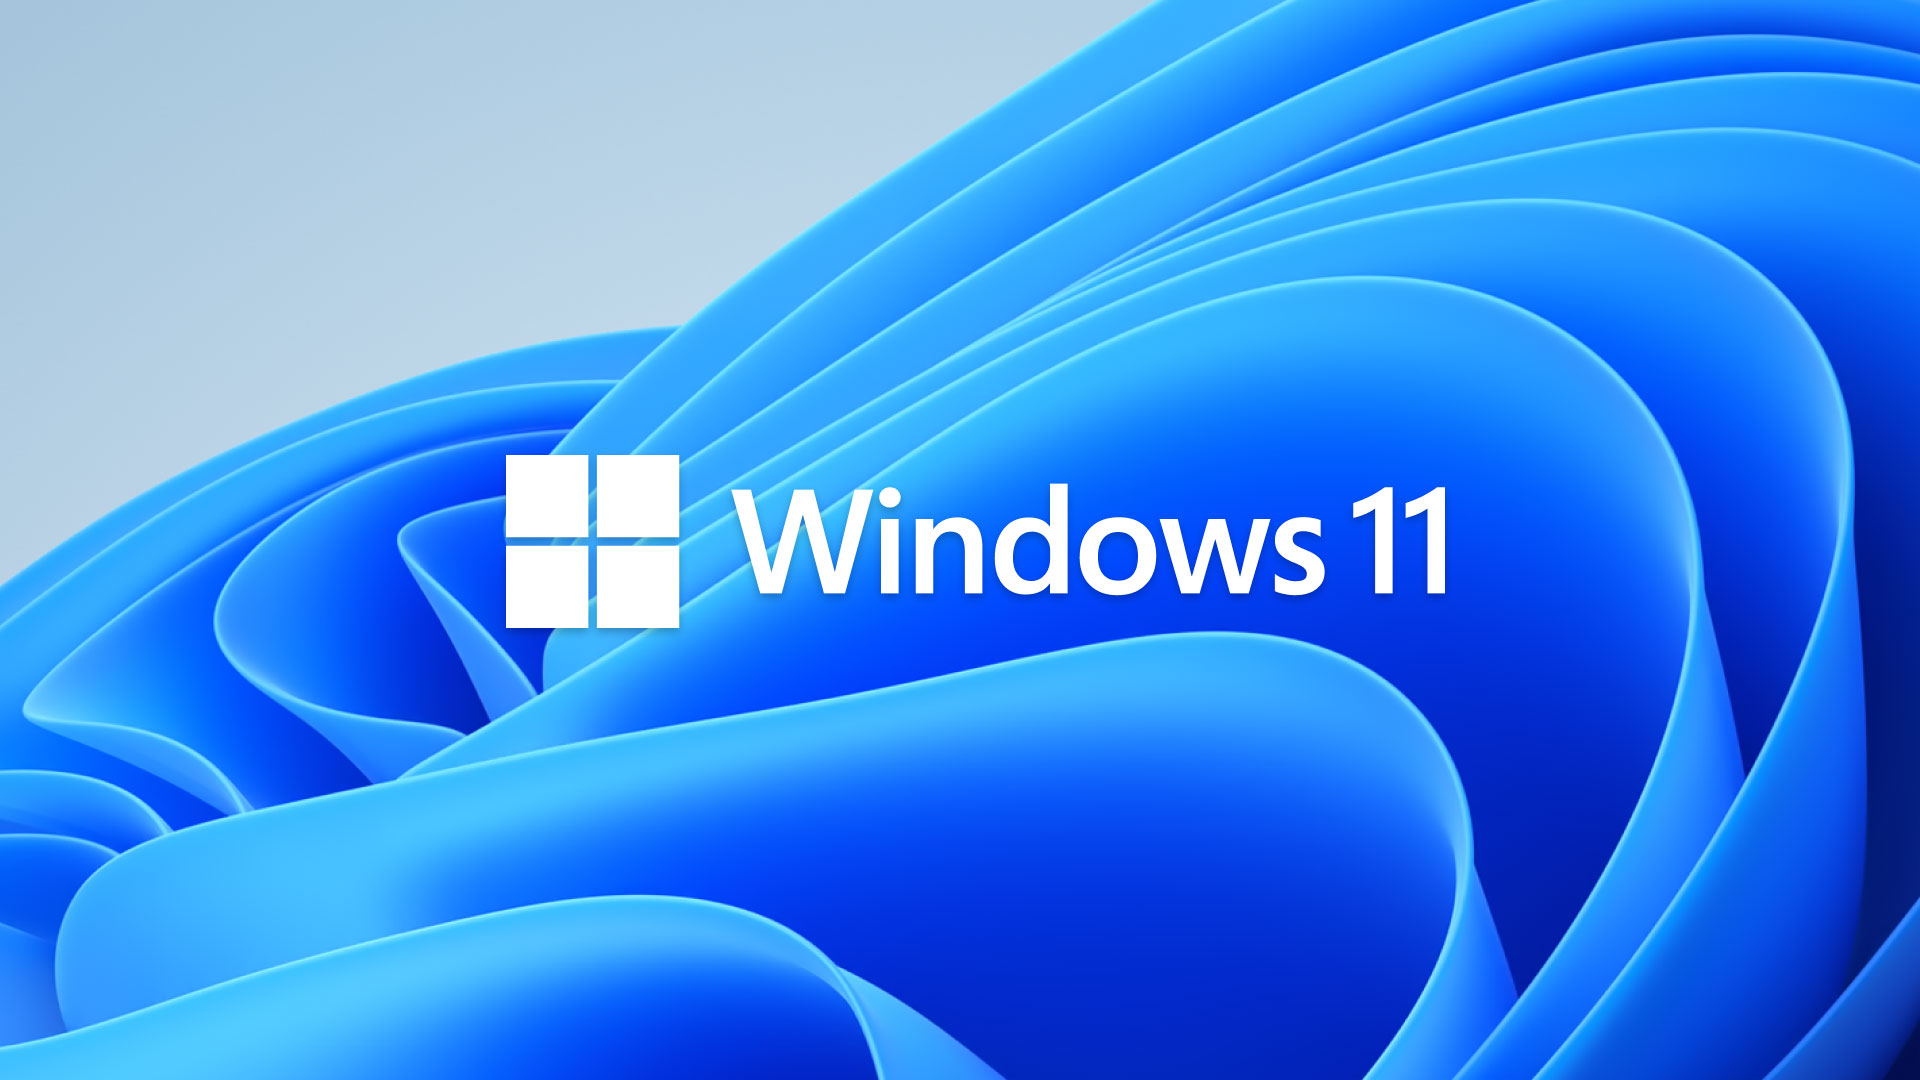 Conta aí pra gente: o que você acha do Windows 11?